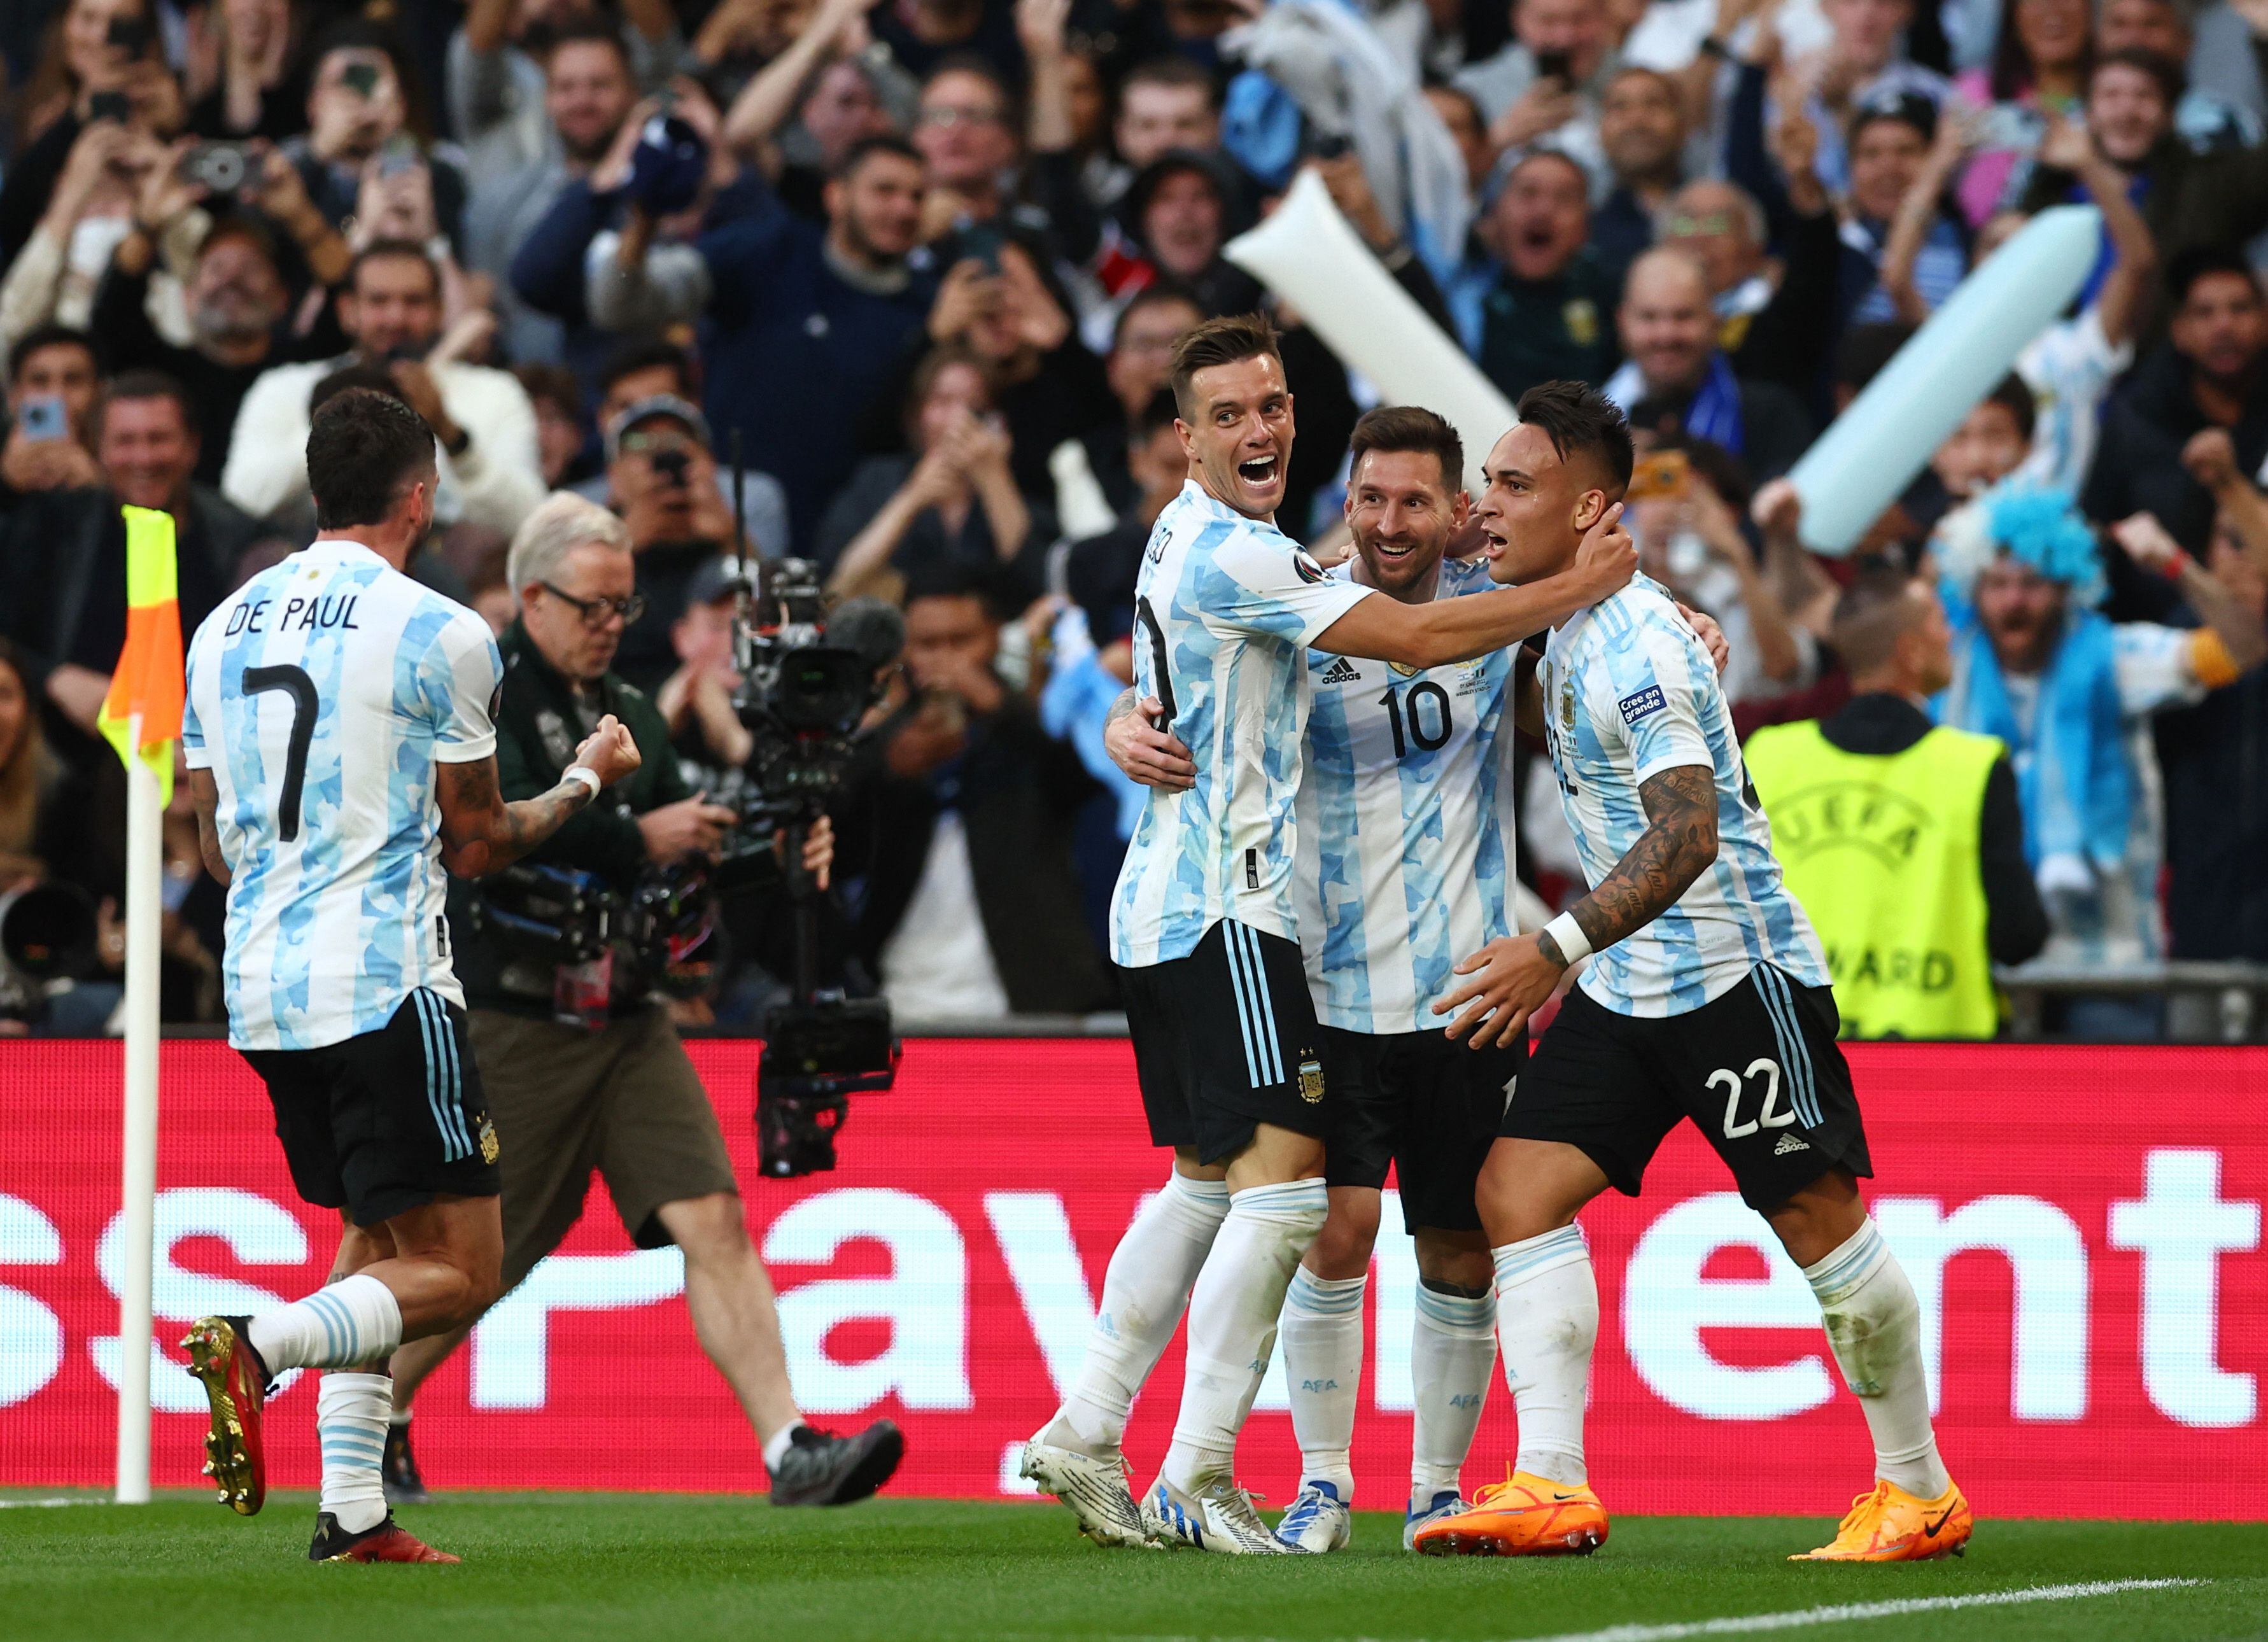 La celebración del primer tanto de Argentina, con Lo Celso, Martínez y Messi como protagonistas (REUTERS/David Klein)